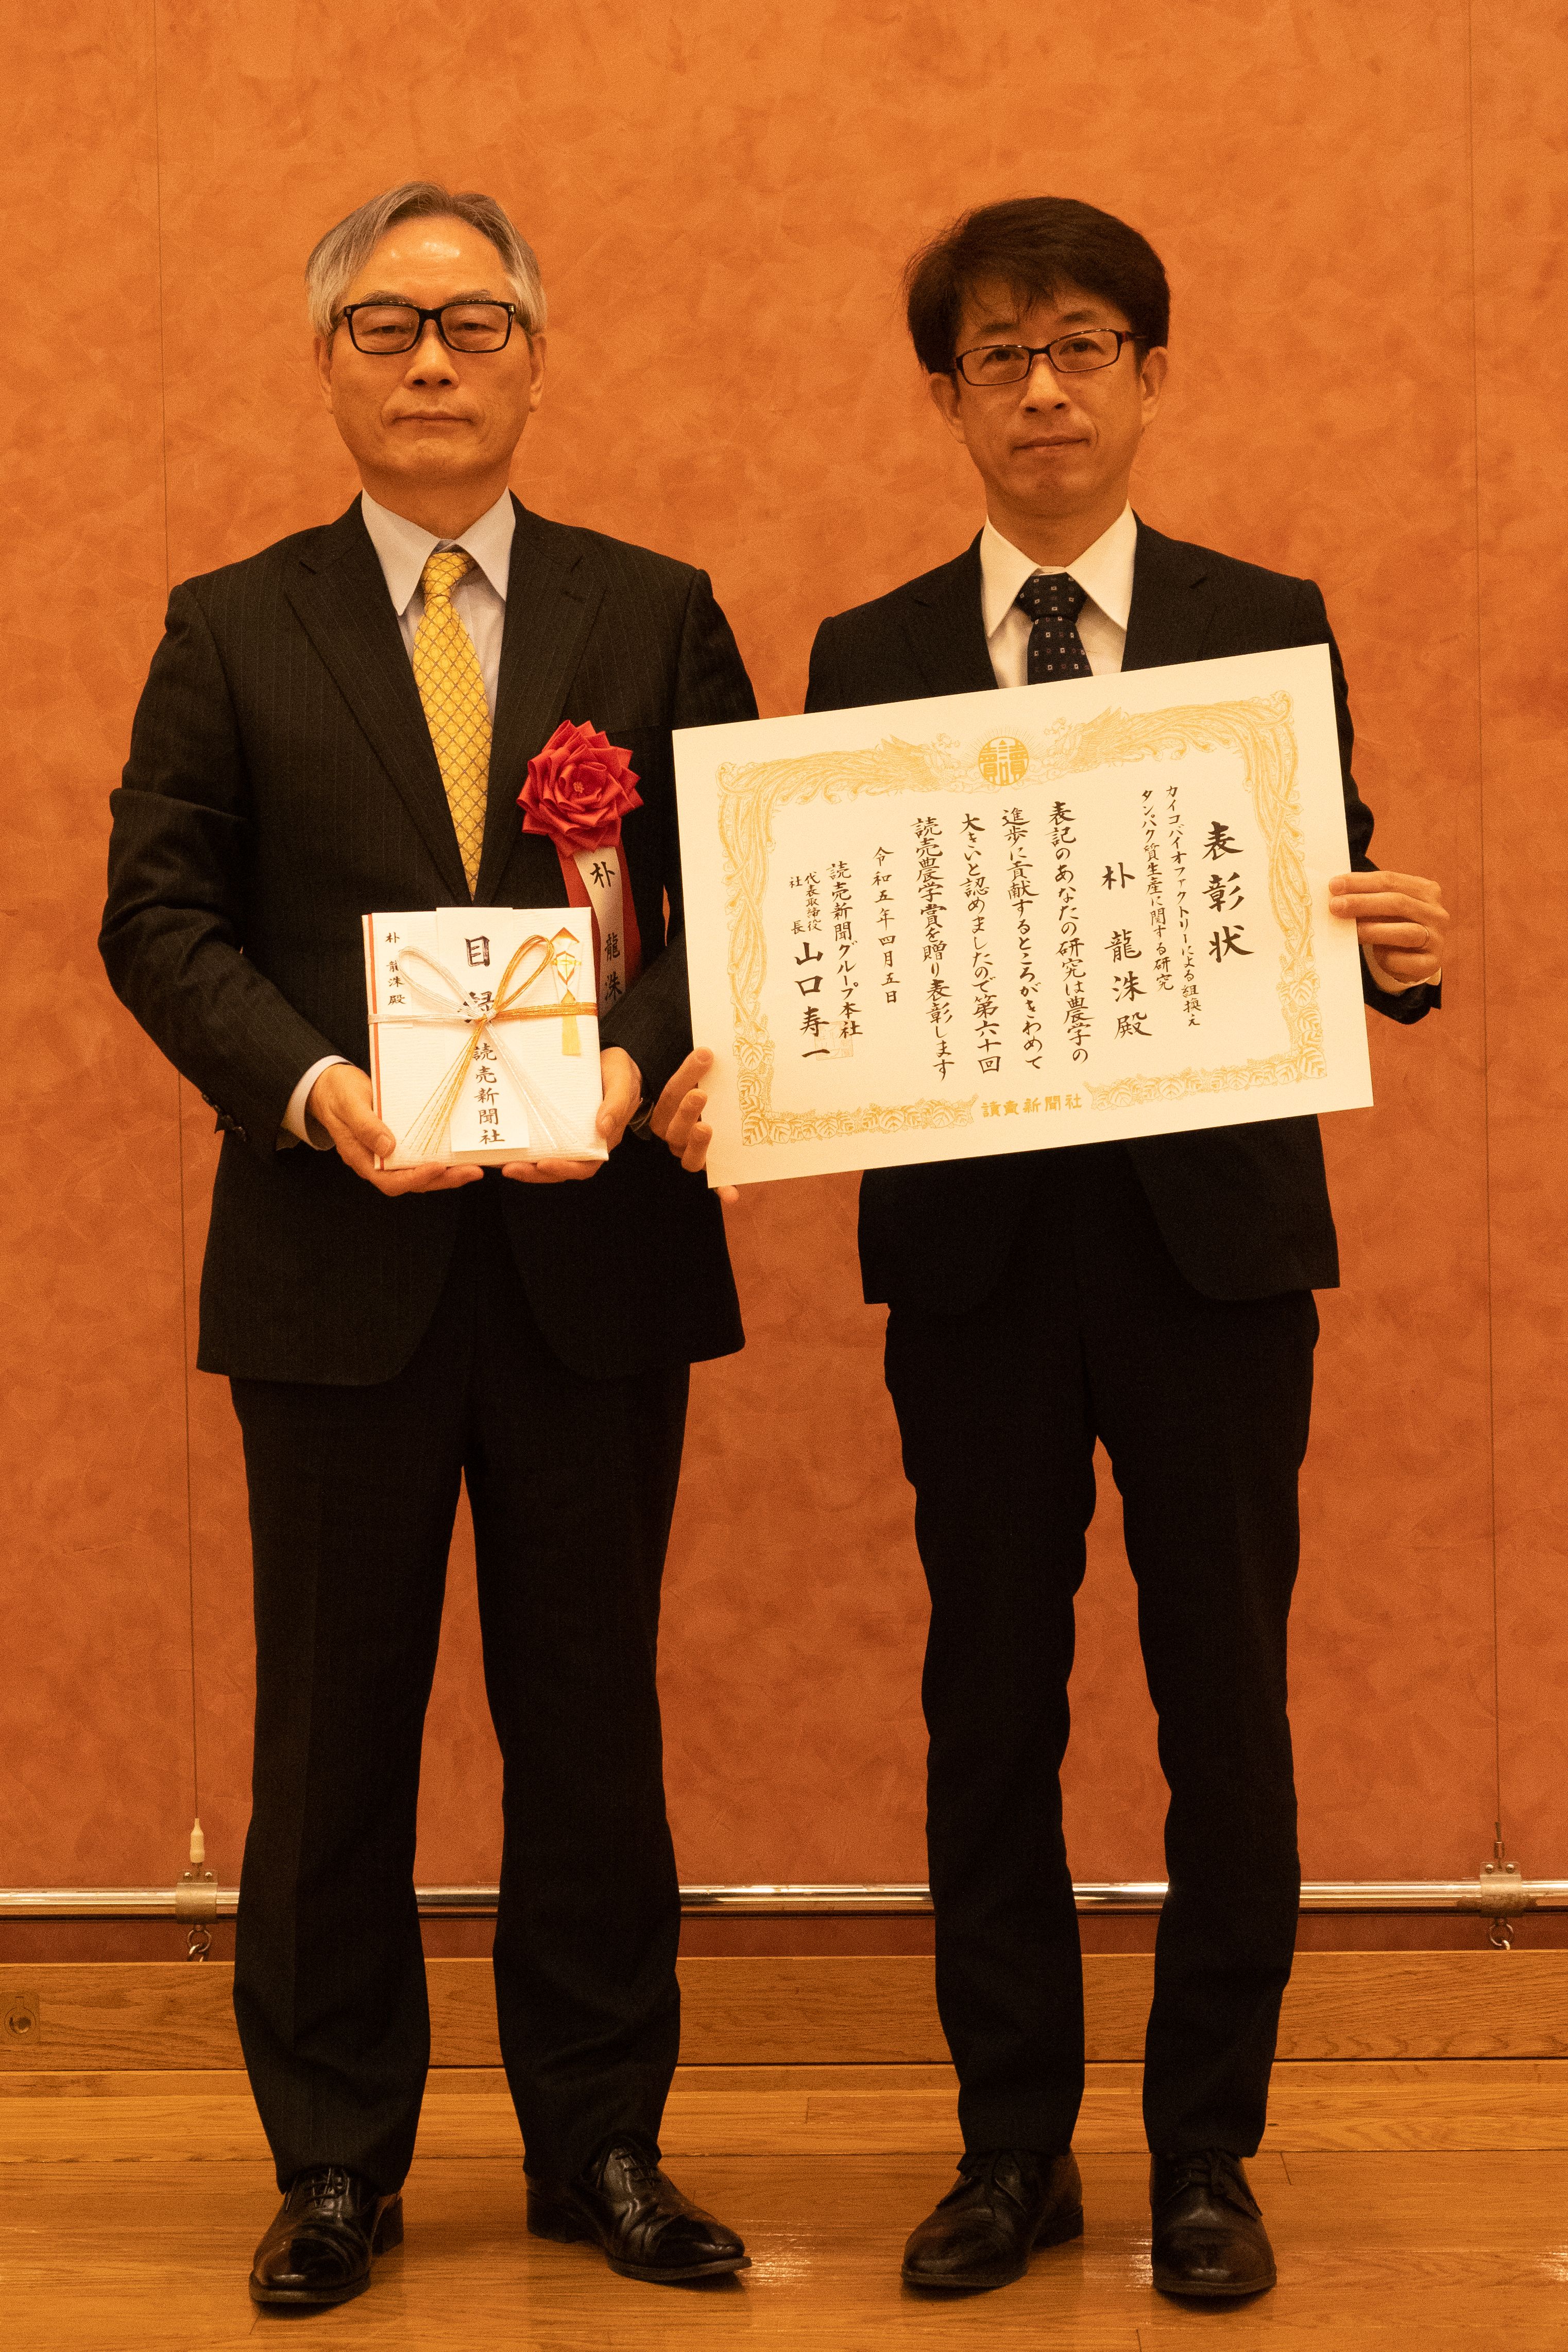 朴龍洙教授の第94回日本農学賞および第60回読売農学賞の授与式および受賞講演を行いました